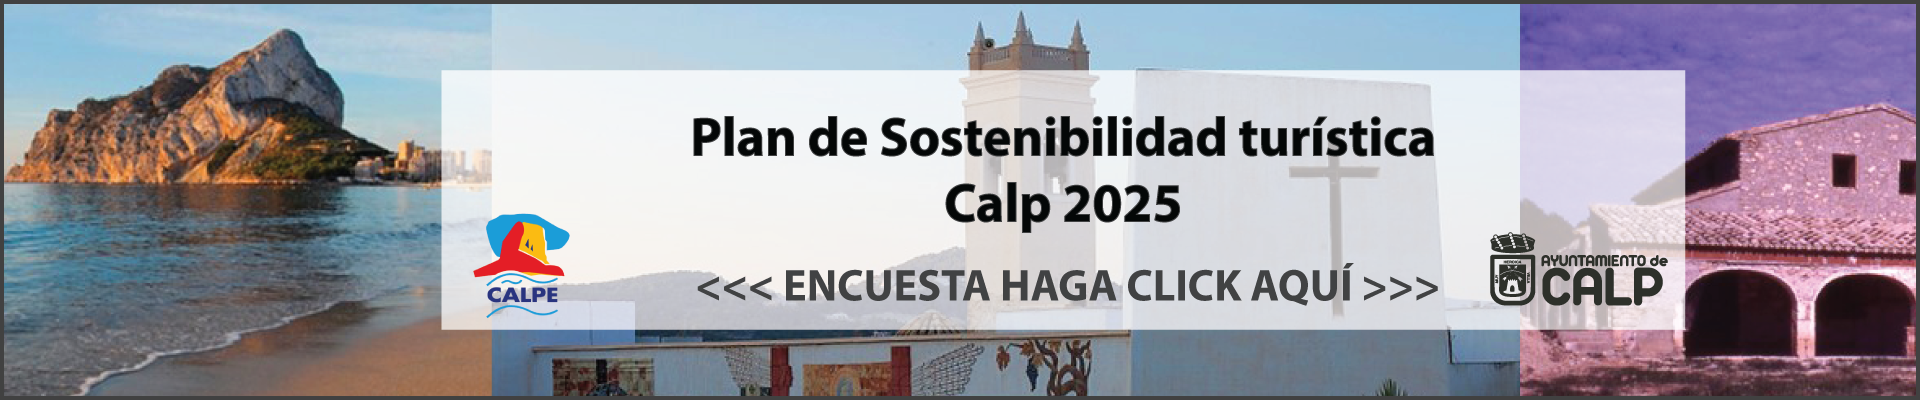 Plan de Sostenibilidad Turística Calp 2025